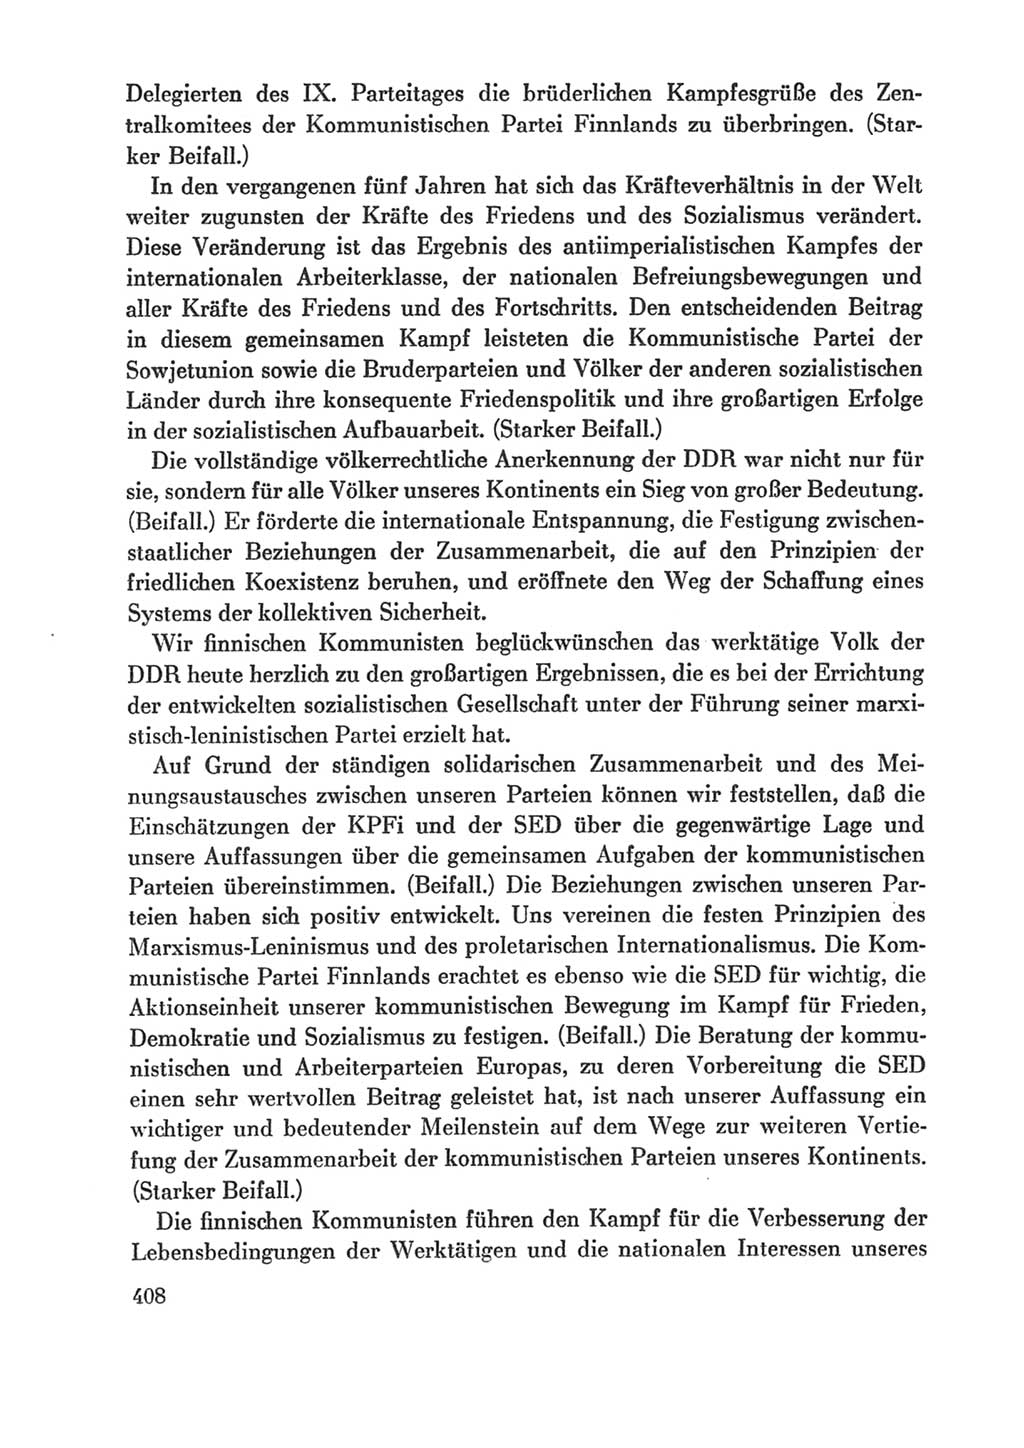 Protokoll der Verhandlungen des Ⅸ. Parteitages der Sozialistischen Einheitspartei Deutschlands (SED) [Deutsche Demokratische Republik (DDR)] 1976, Band 1, Seite 408 (Prot. Verh. Ⅸ. PT SED DDR 1976, Bd. 1, S. 408)